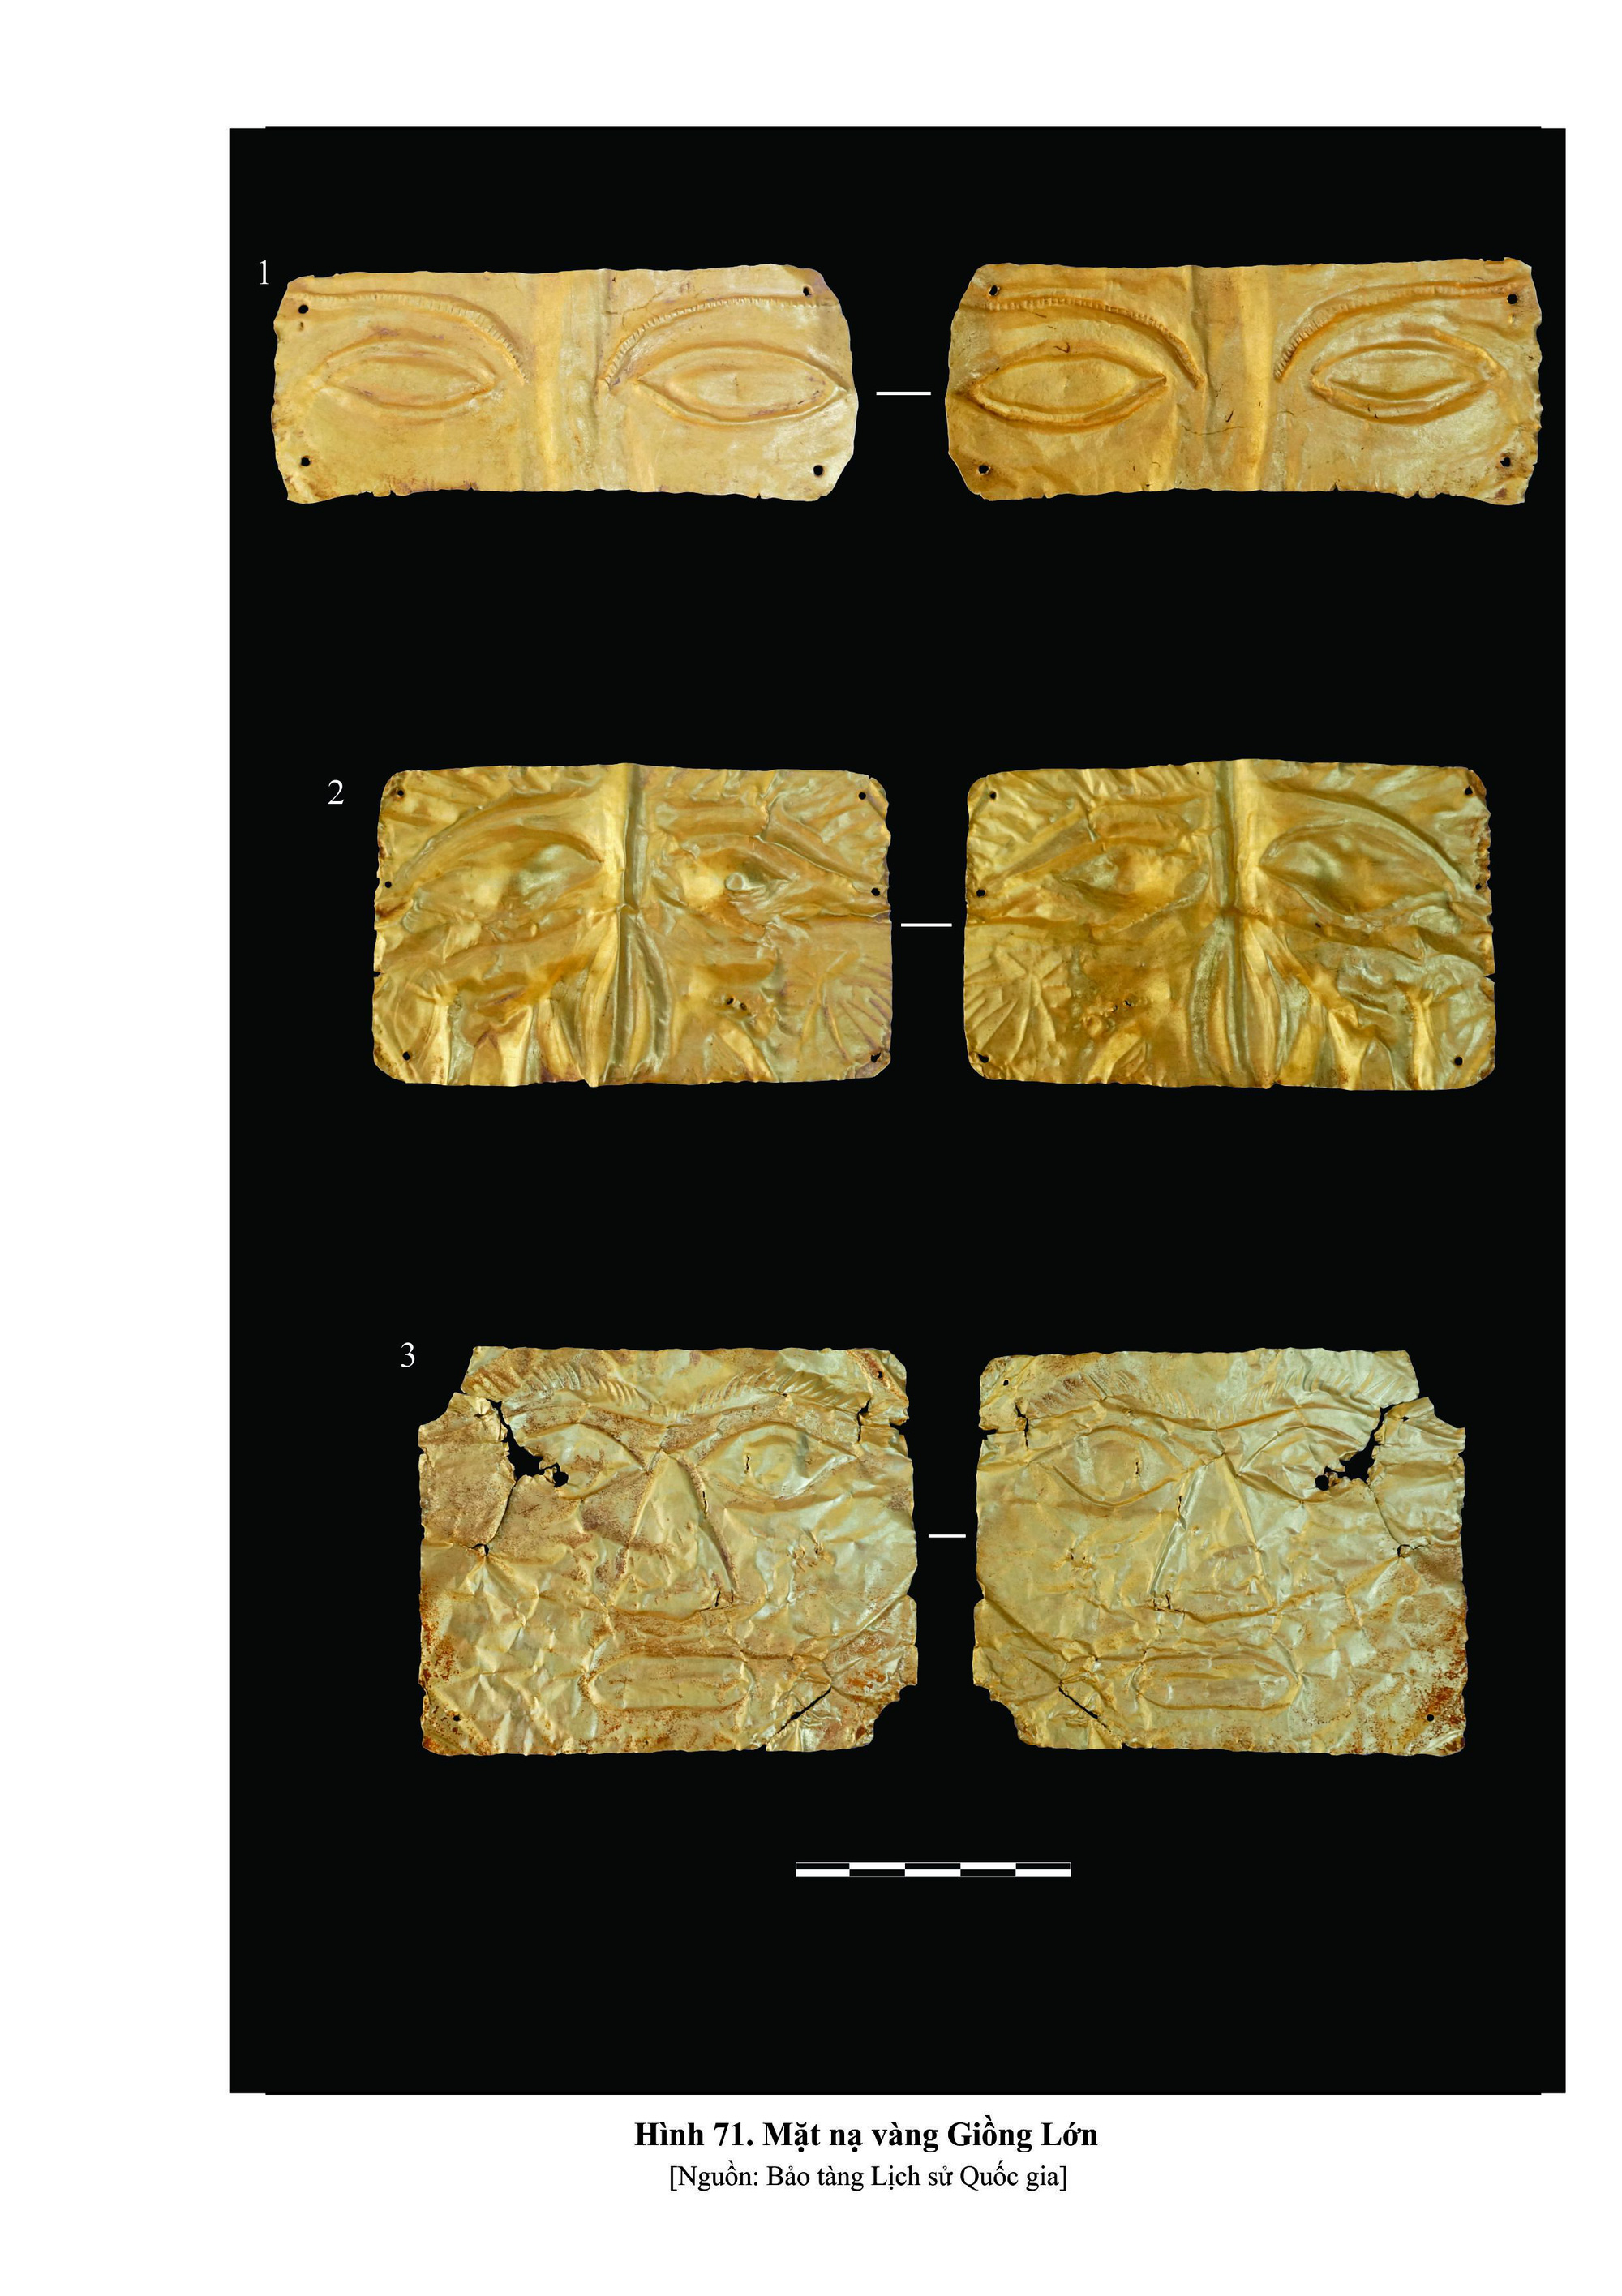 Sưu tập vàng lá ở Tiền Giang, mặt nạ vàng ở Vũng Tàu được công nhận Bảo vật Quốc gia - Ảnh 1.